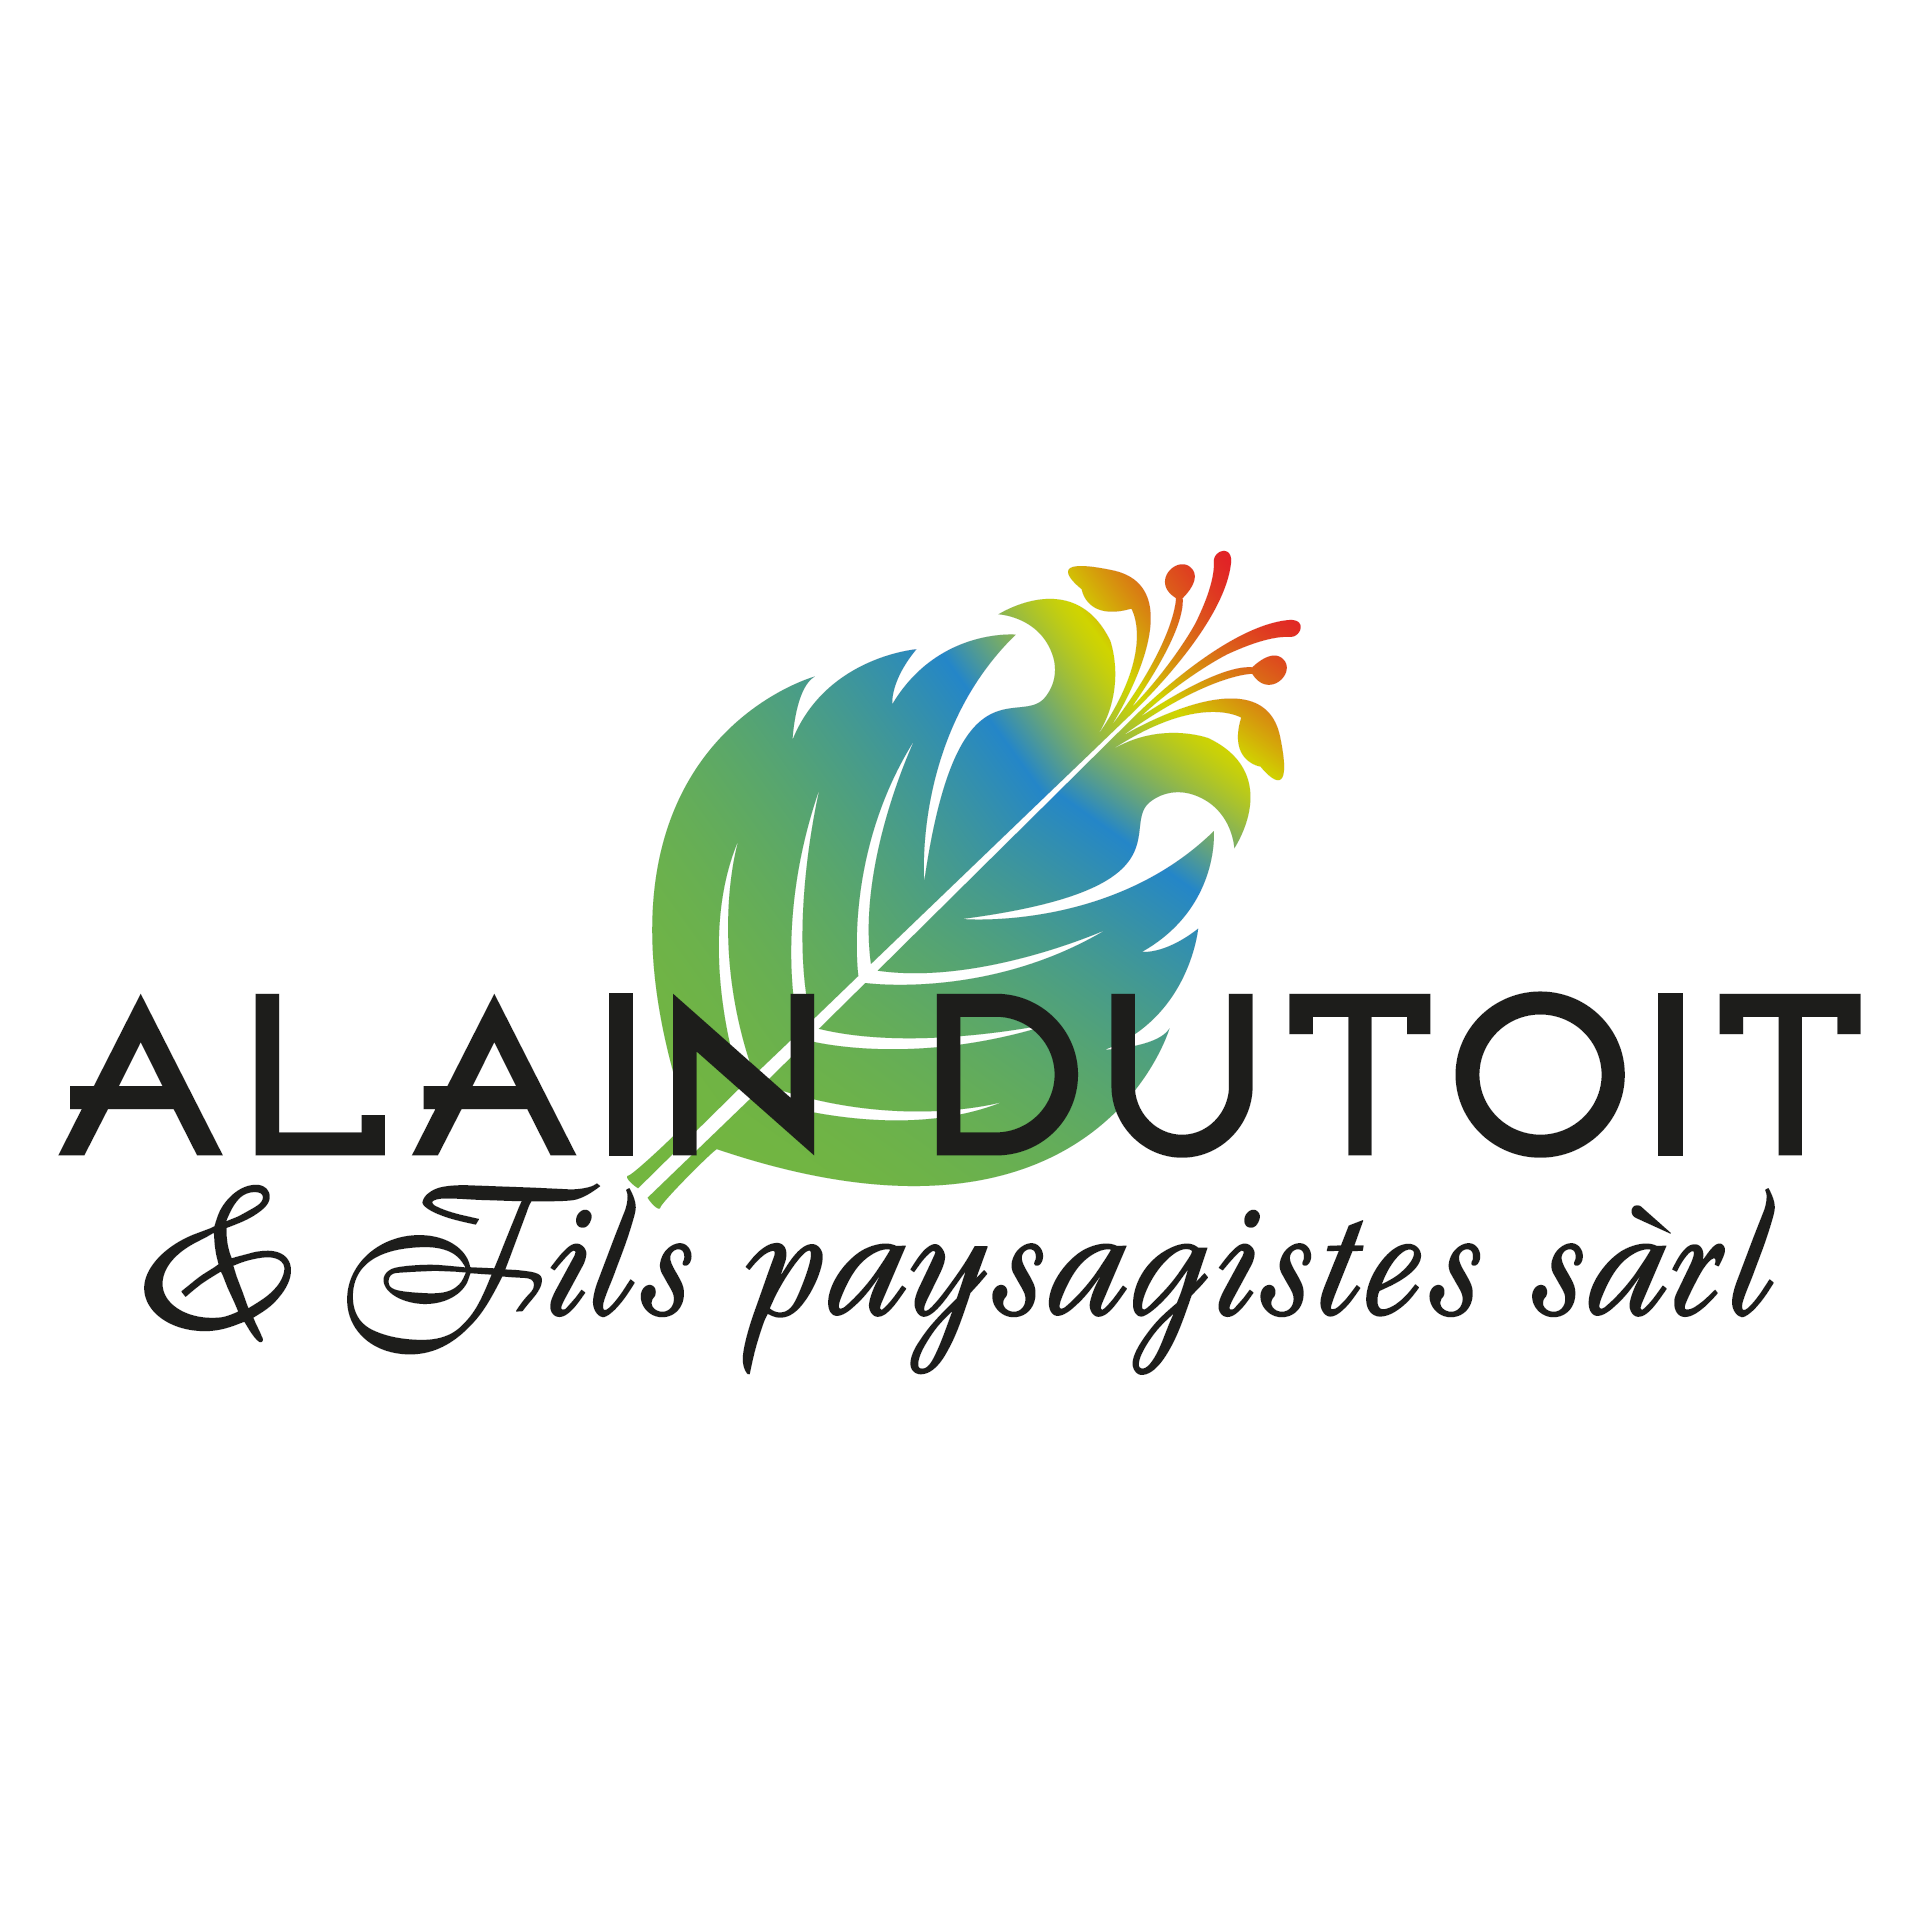 Alain Dutoit Jardinier-Paysagiste Sàrl Logo